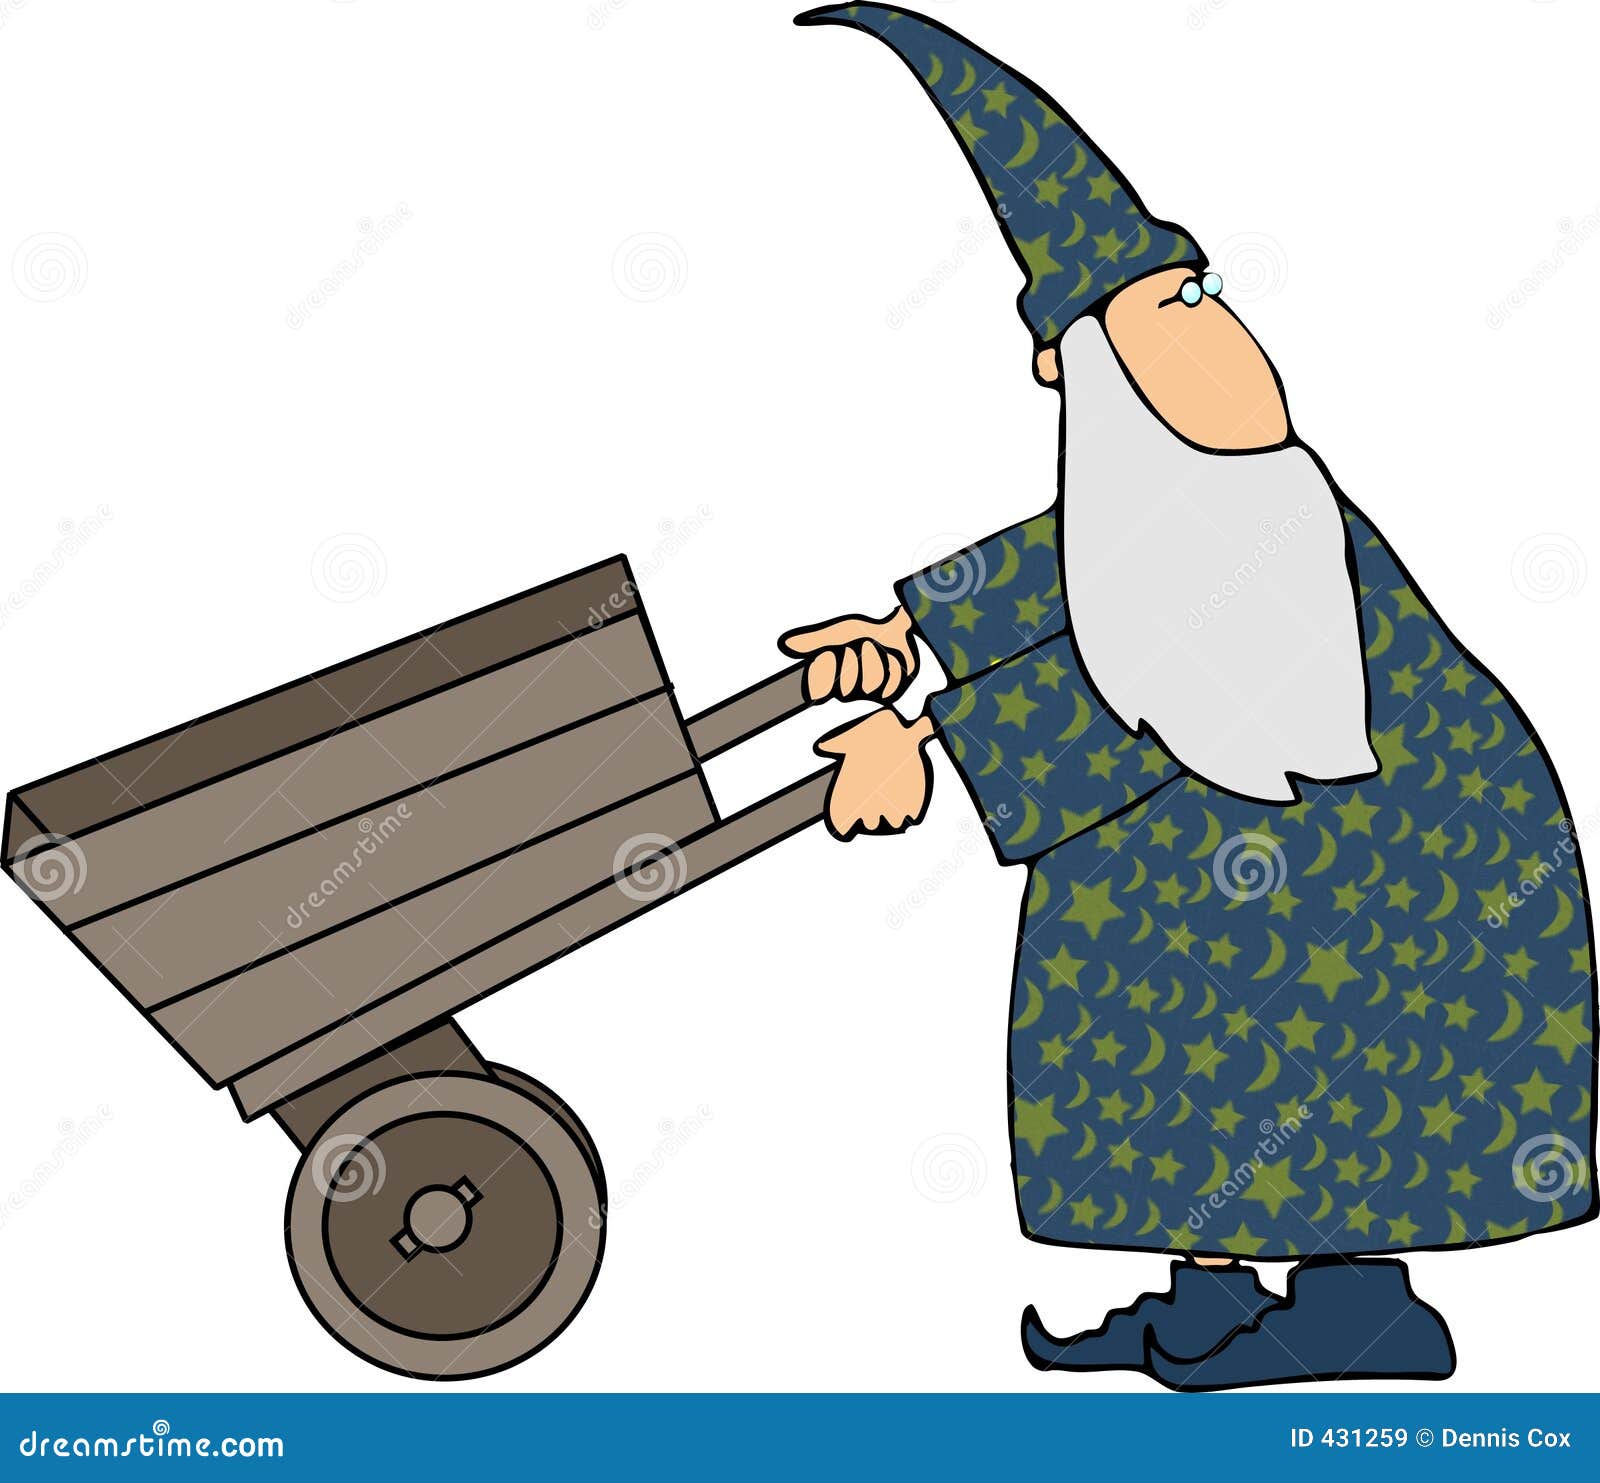 wizard-pushing-cart-431259.jpg